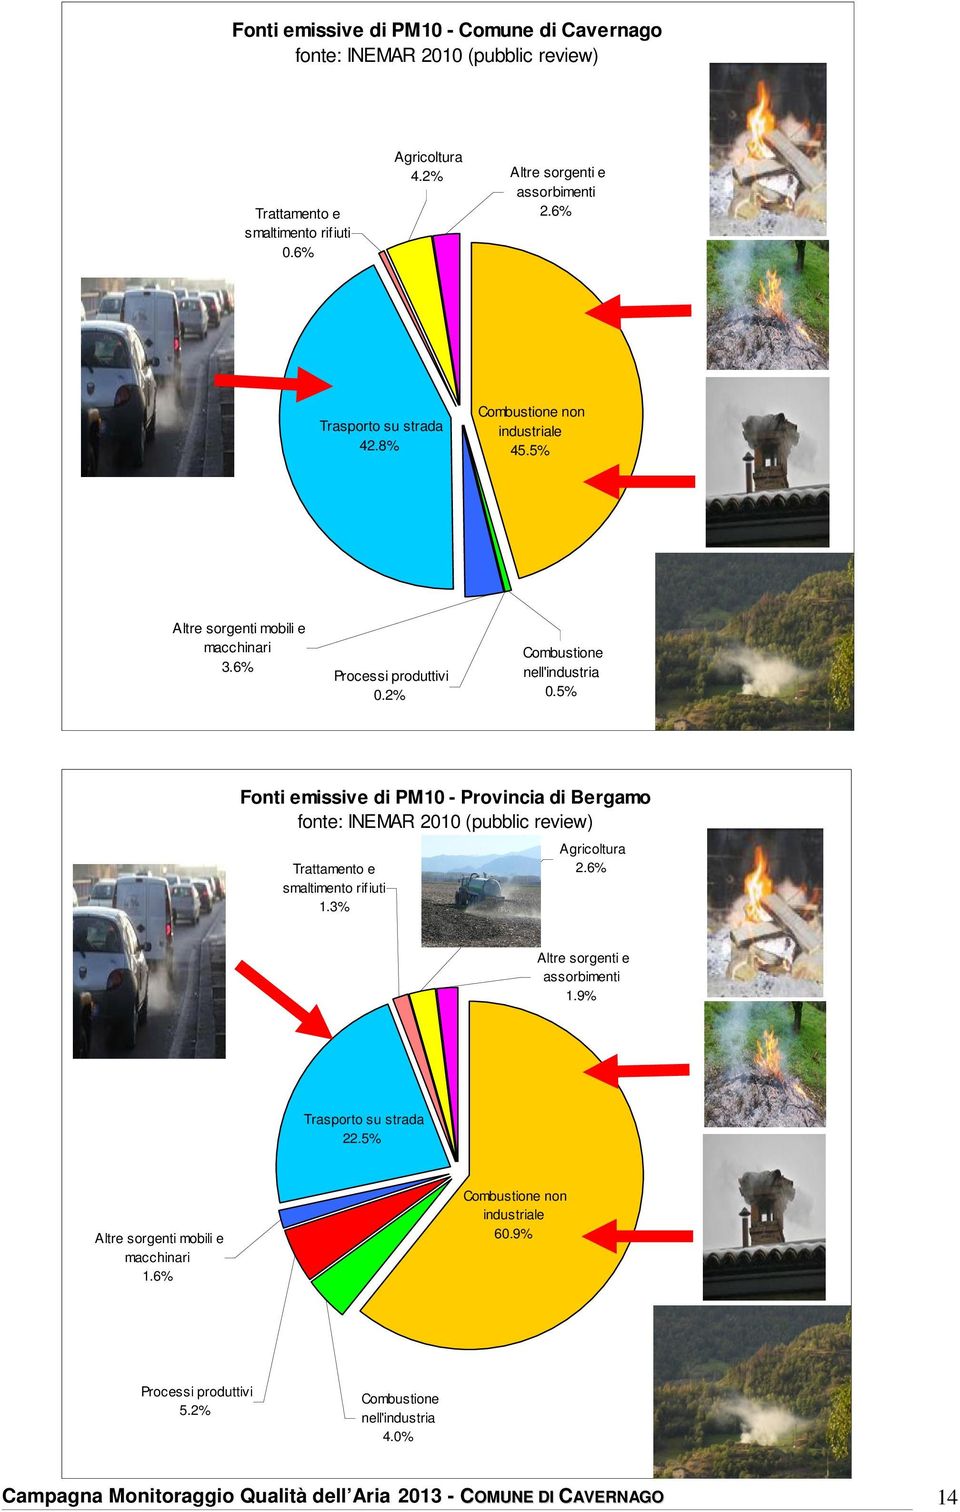 5% Fonti emissive di PM1 - Provincia di Bergamo fonte: INEMAR 21 (pubblic review) Trattamento e smaltimento rifiuti 1.3% Agricoltura 2.6% Altre sorgenti e assorbimenti 1.